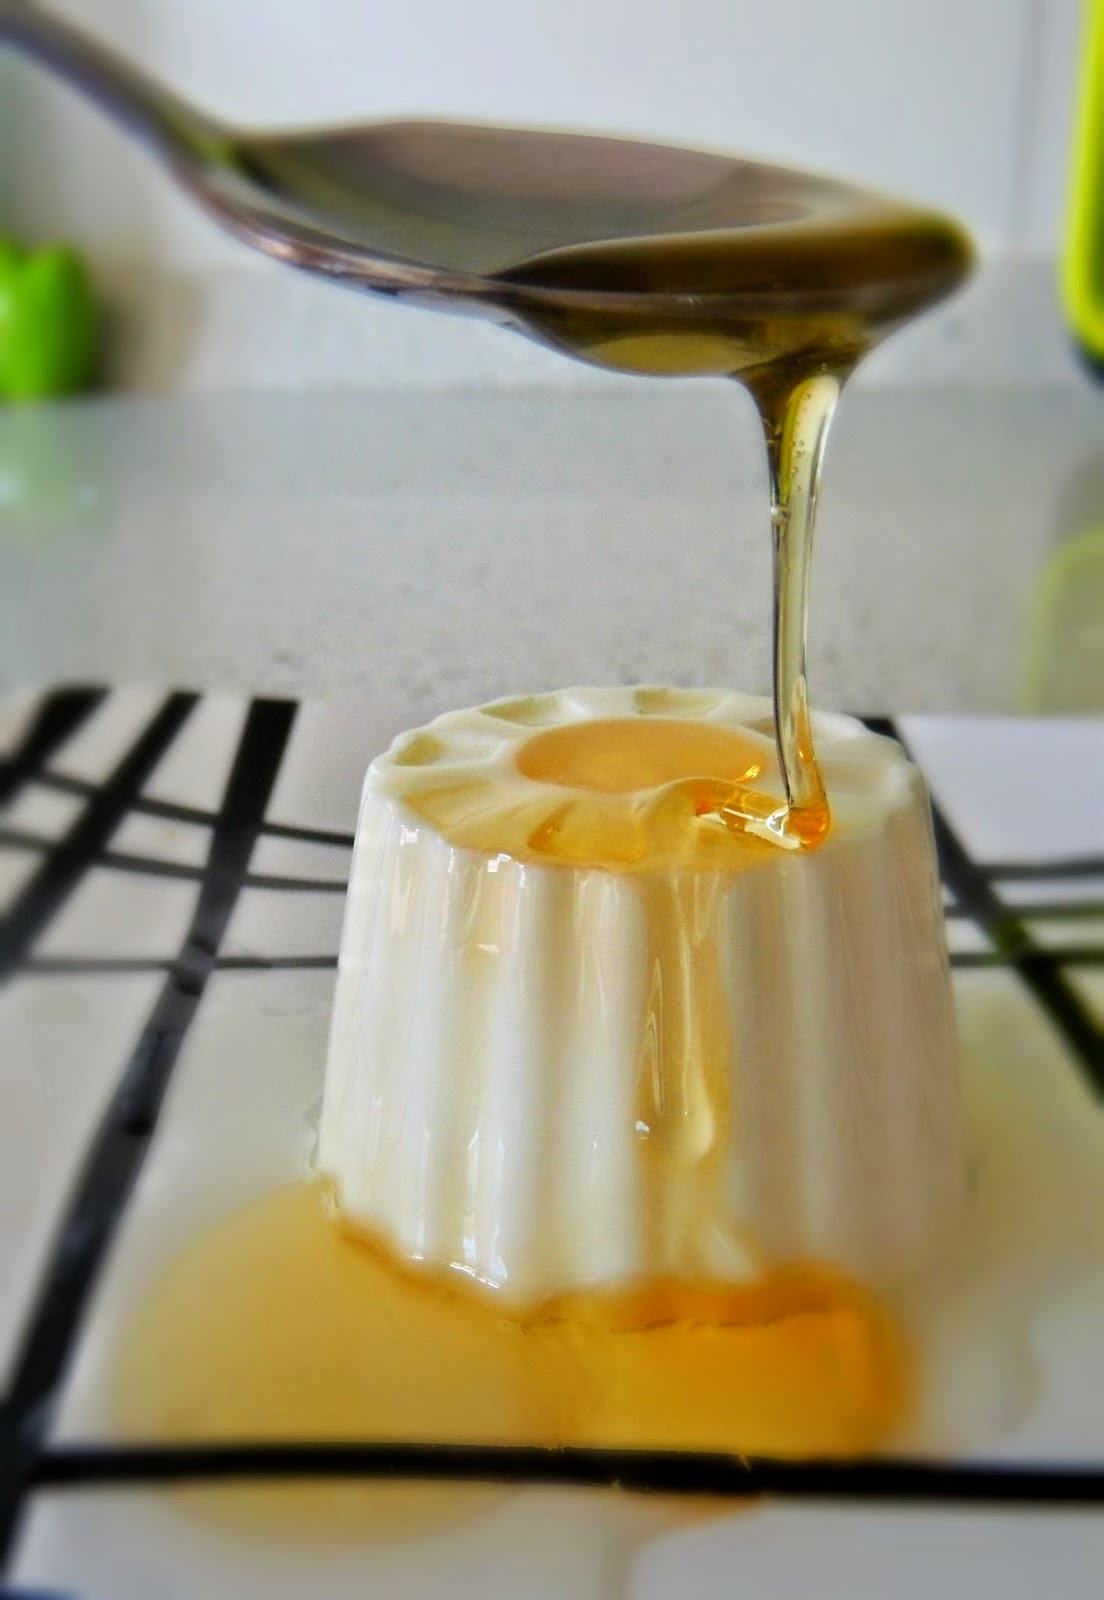 Farmacéutico en la web: Receta de queso fresco de Burgos con miel